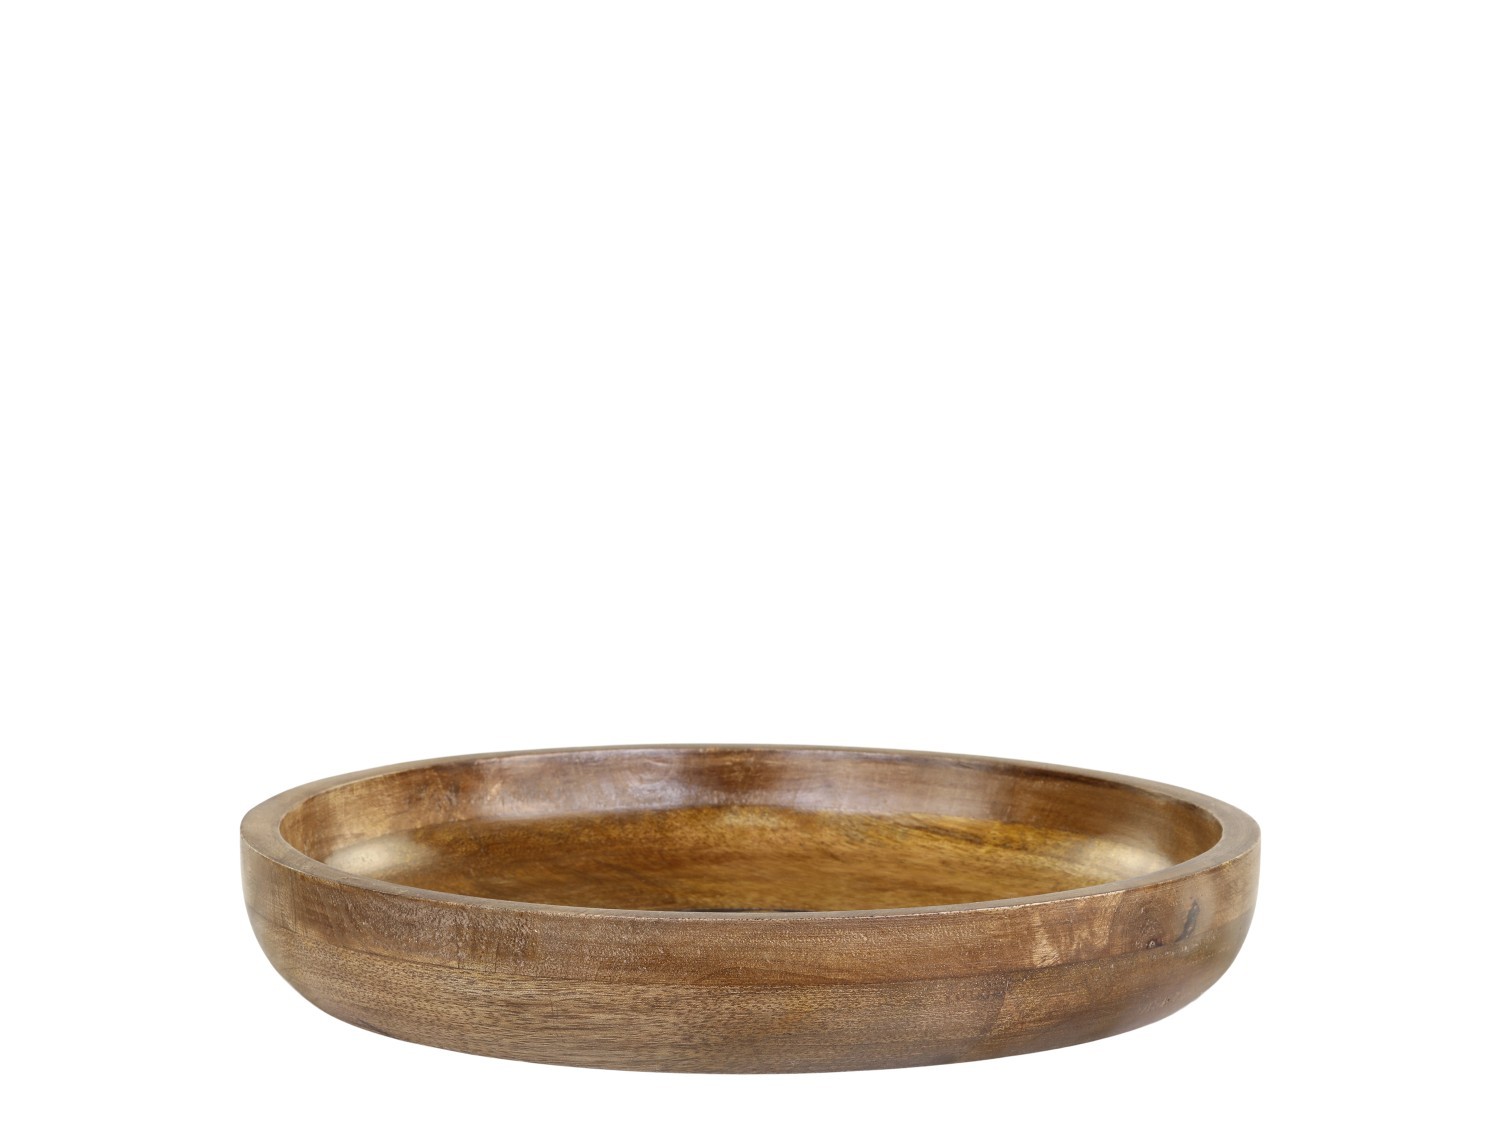 Dřevěná servírovací miska z mangového dřeva Tours Bowl - Ø 30*5 cm/ 1950ml Chic Antique